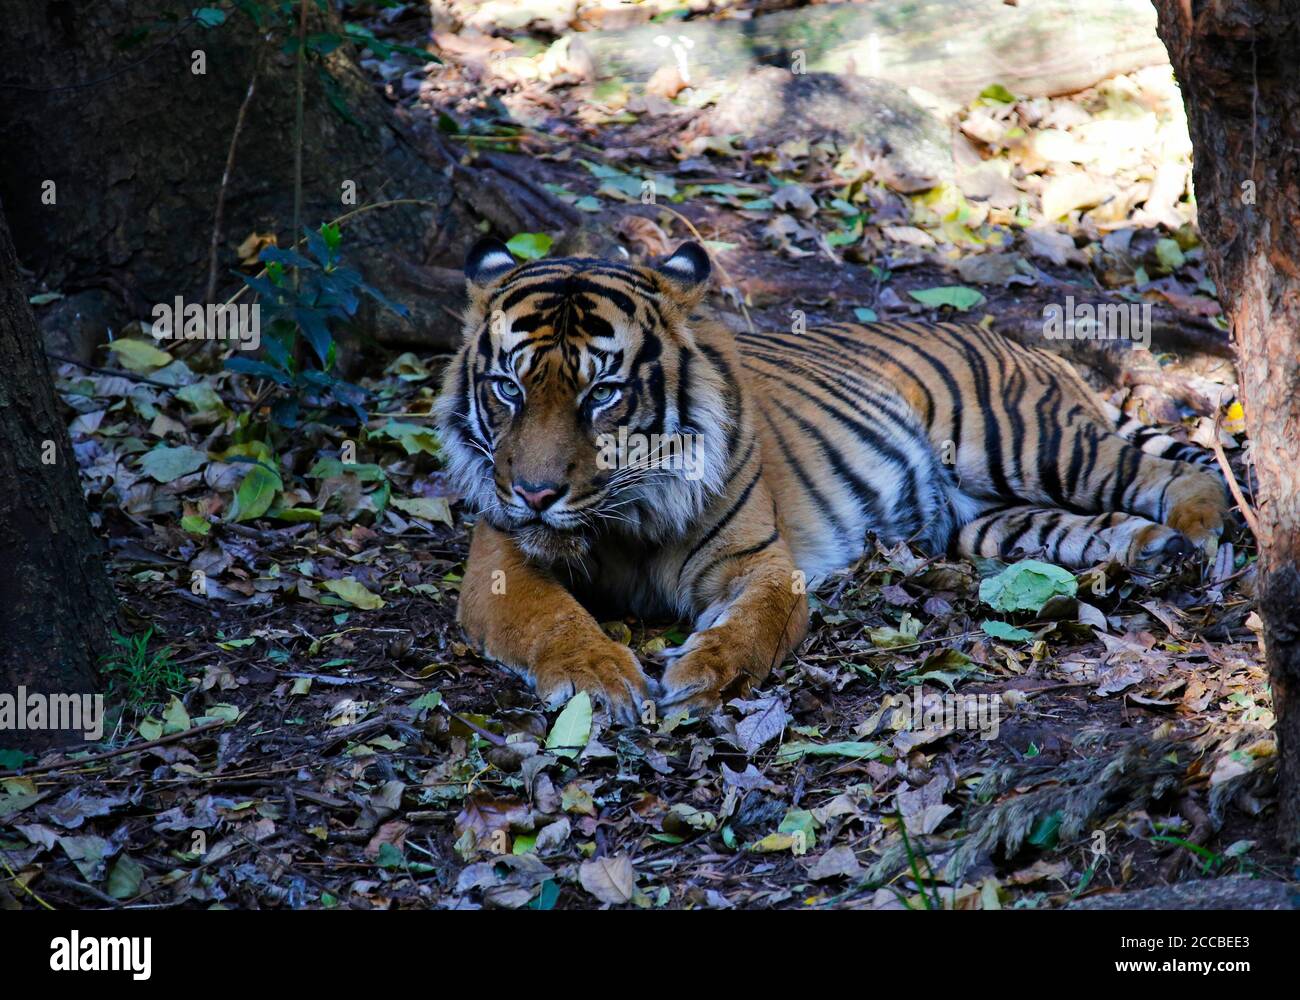 Sumatra tigre descansando en una cama de hojas Foto de stock